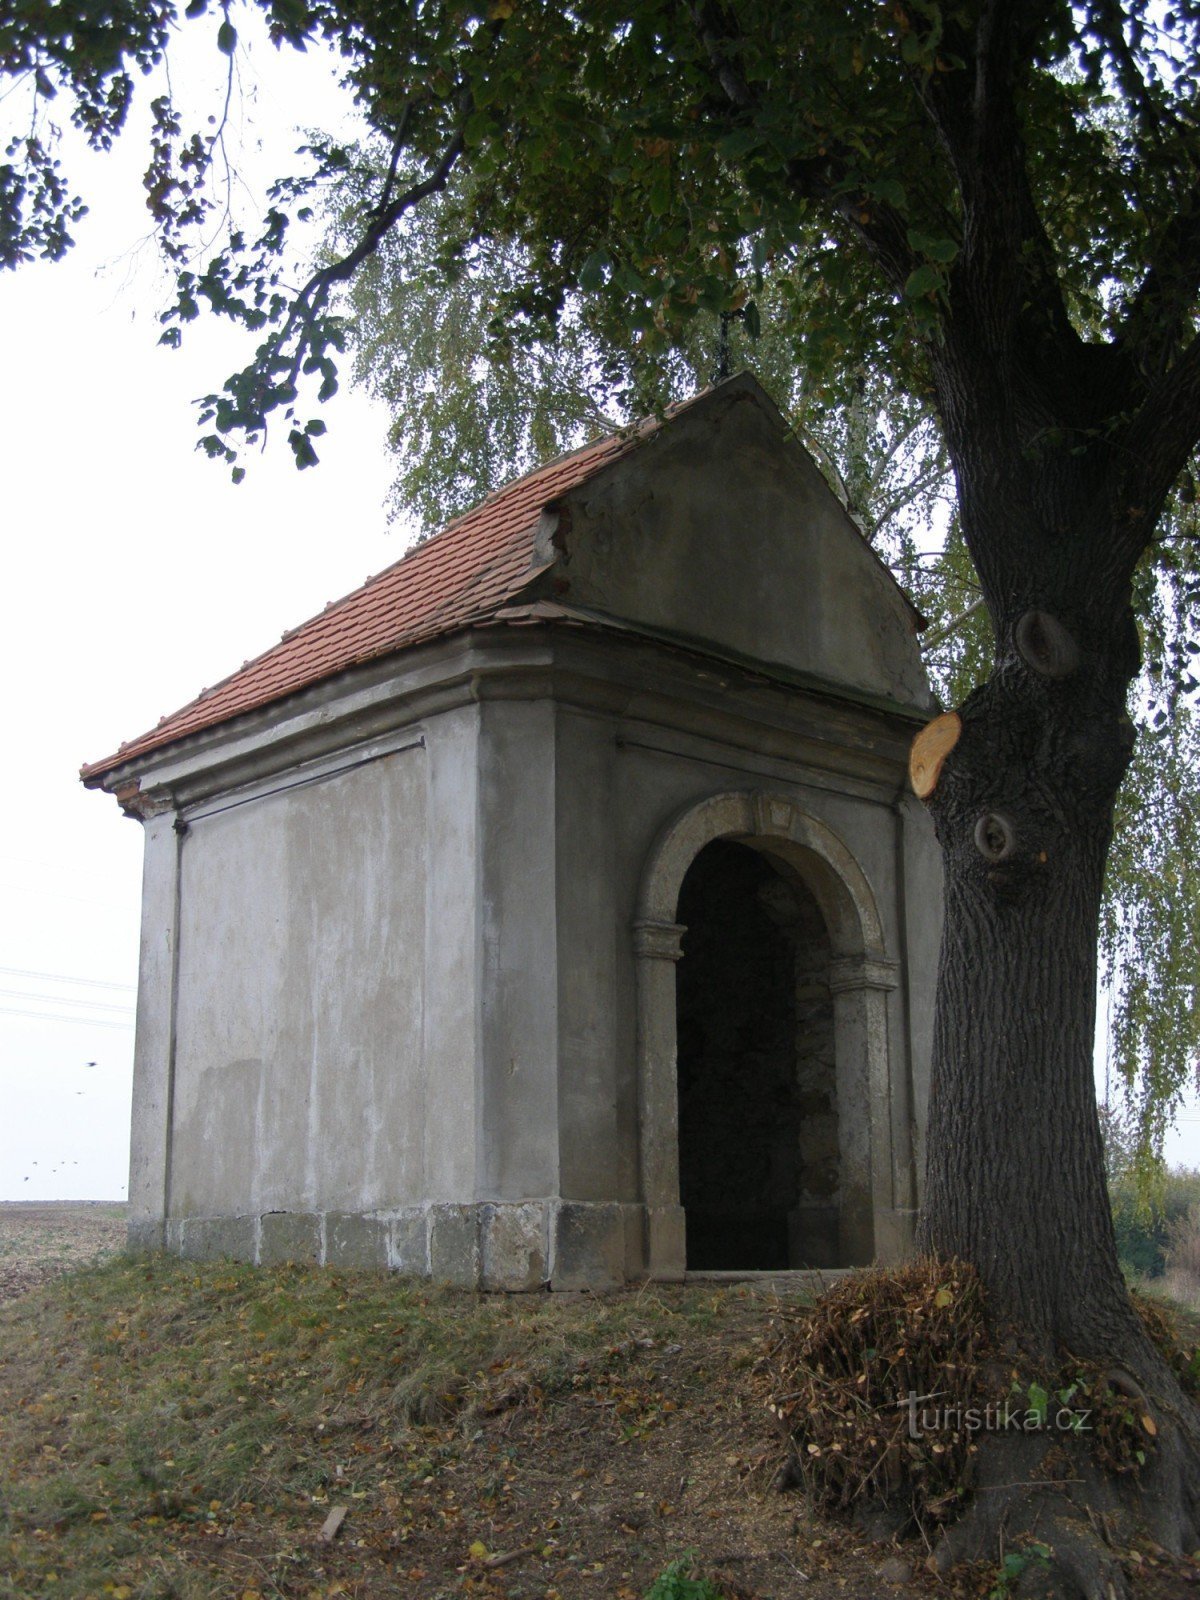 Vestec lähellä Chrudimia - kappelia